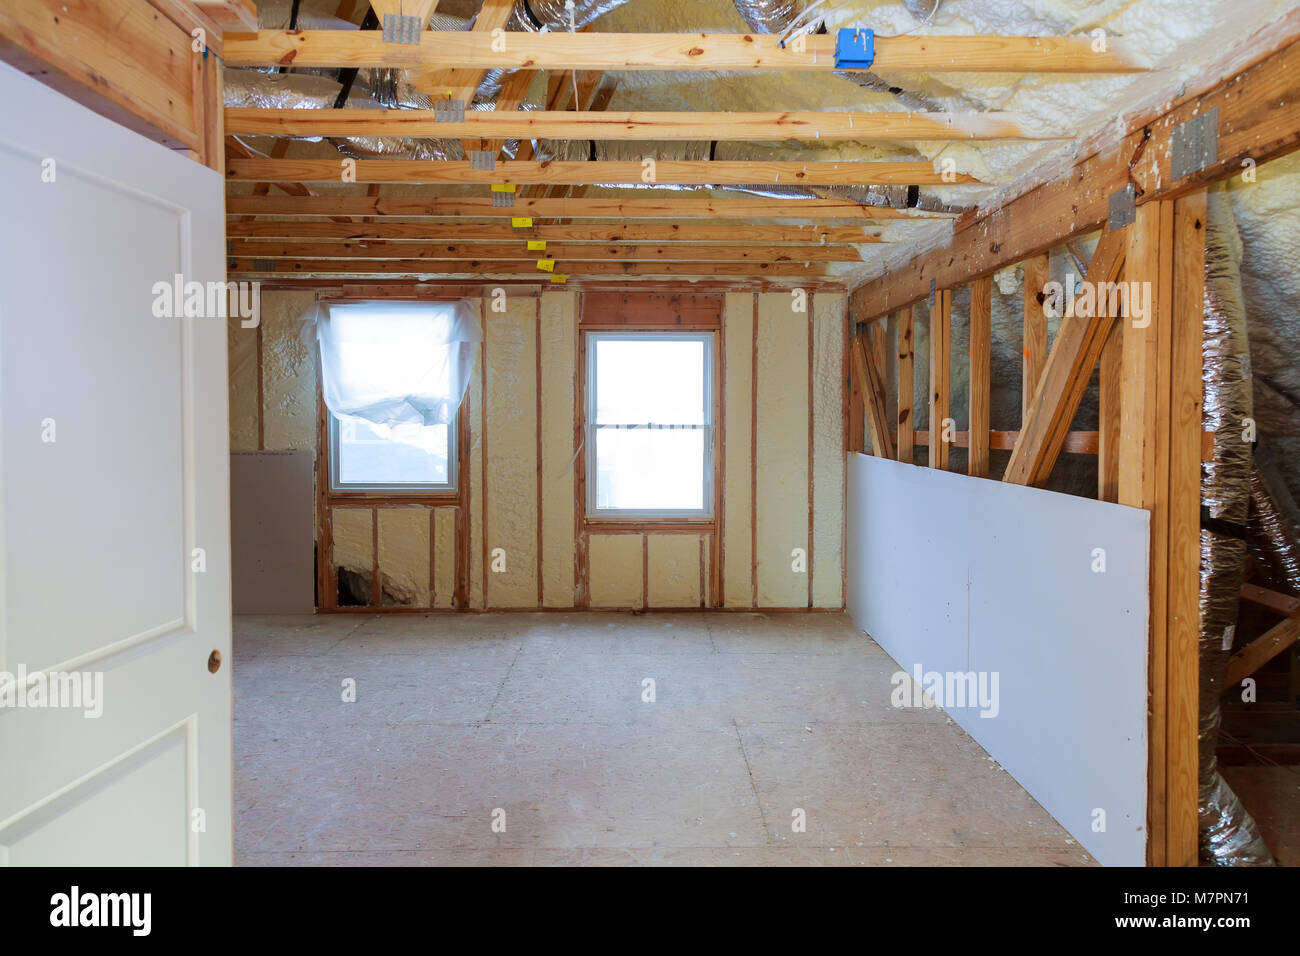 Termica e hidro isolamento interno isolamento parete vista interna costruzione nuova casa residenziale. Foto Stock